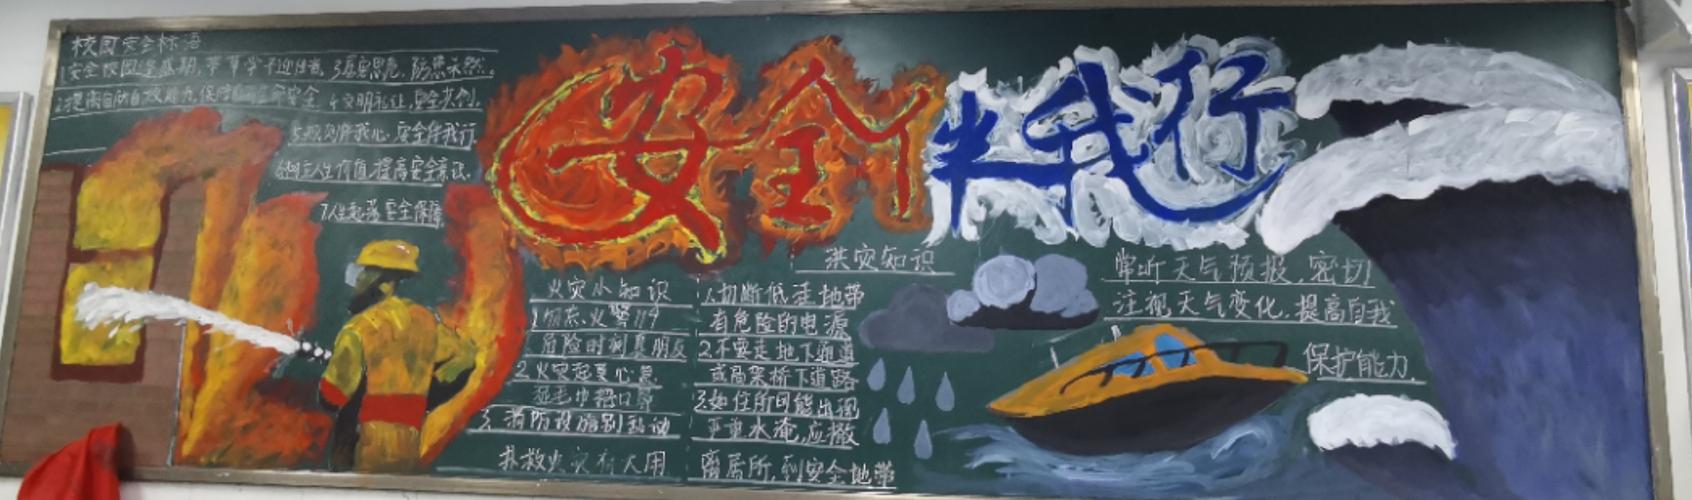 生命诚可贵安全伴我行 郑州市第107高级中学开展安全主题黑板报